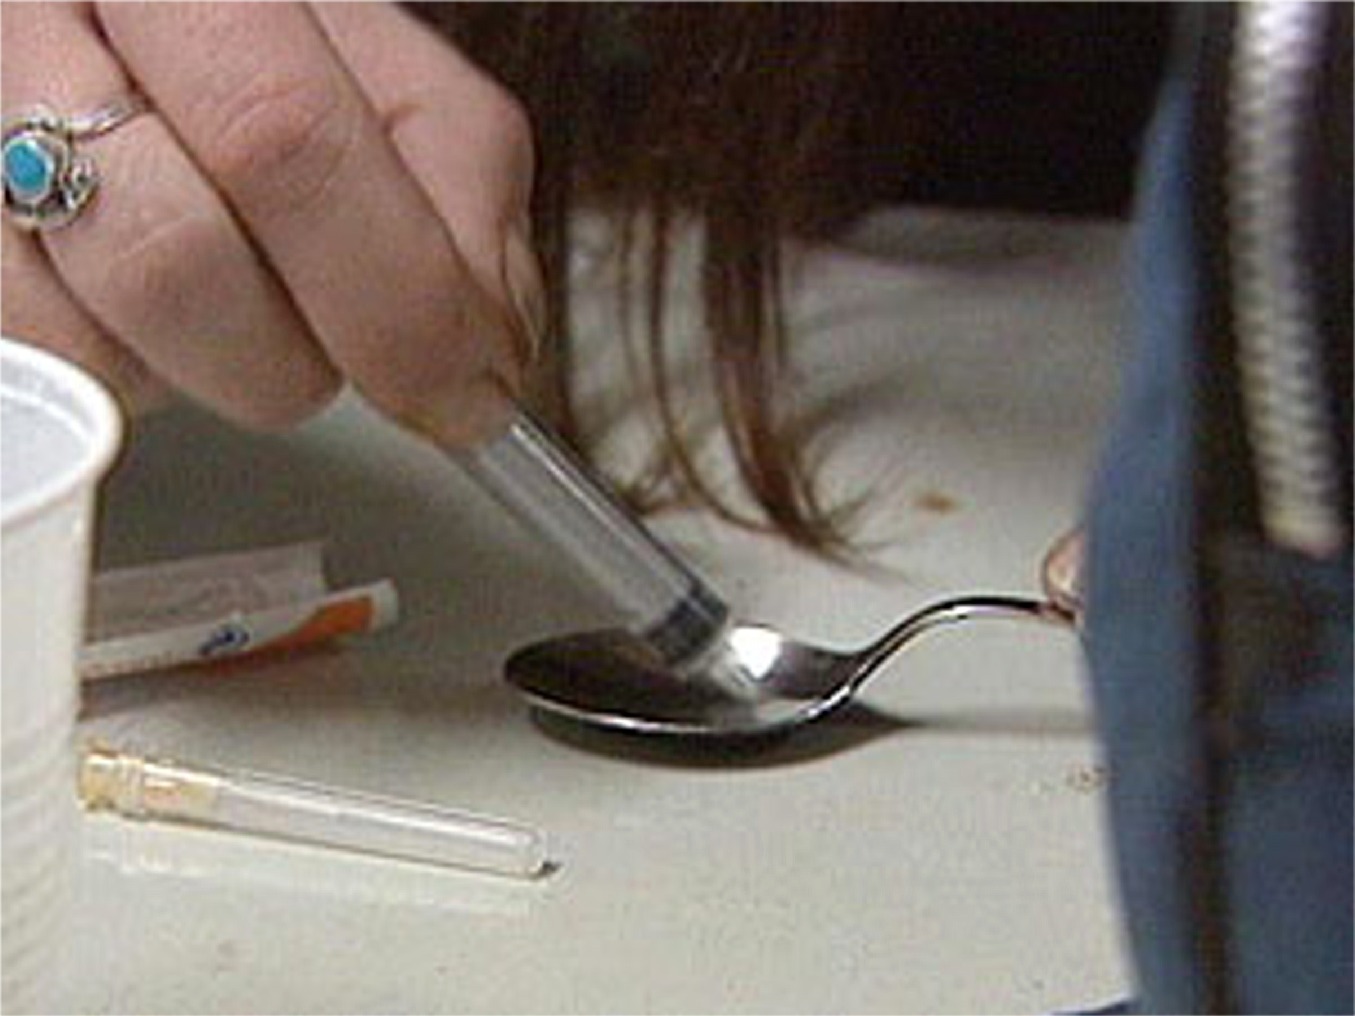 heroin-needle-spoon.jpg